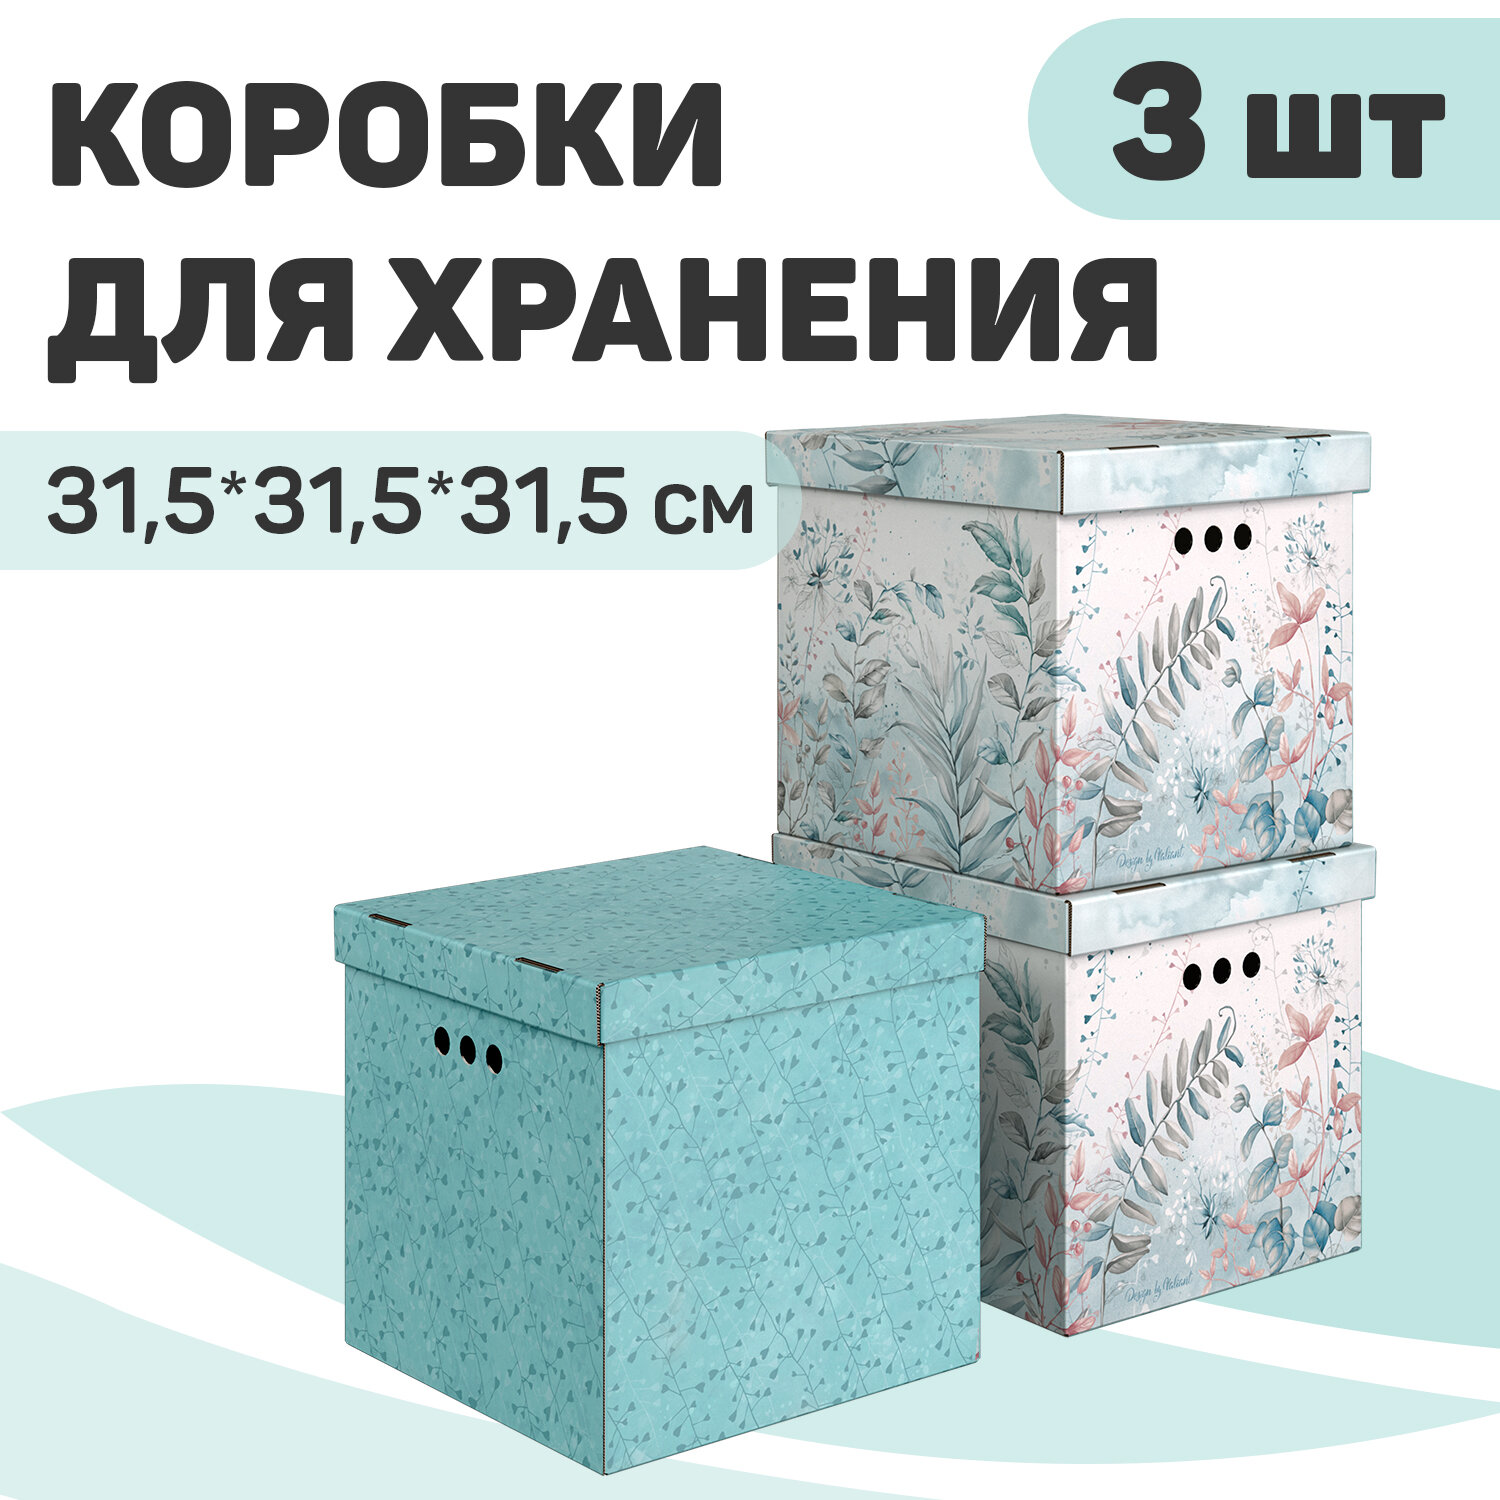 Короба картонные, 31.5*31.5*31.5 см, набор 3 шт, 2 цвета, BOTANIC